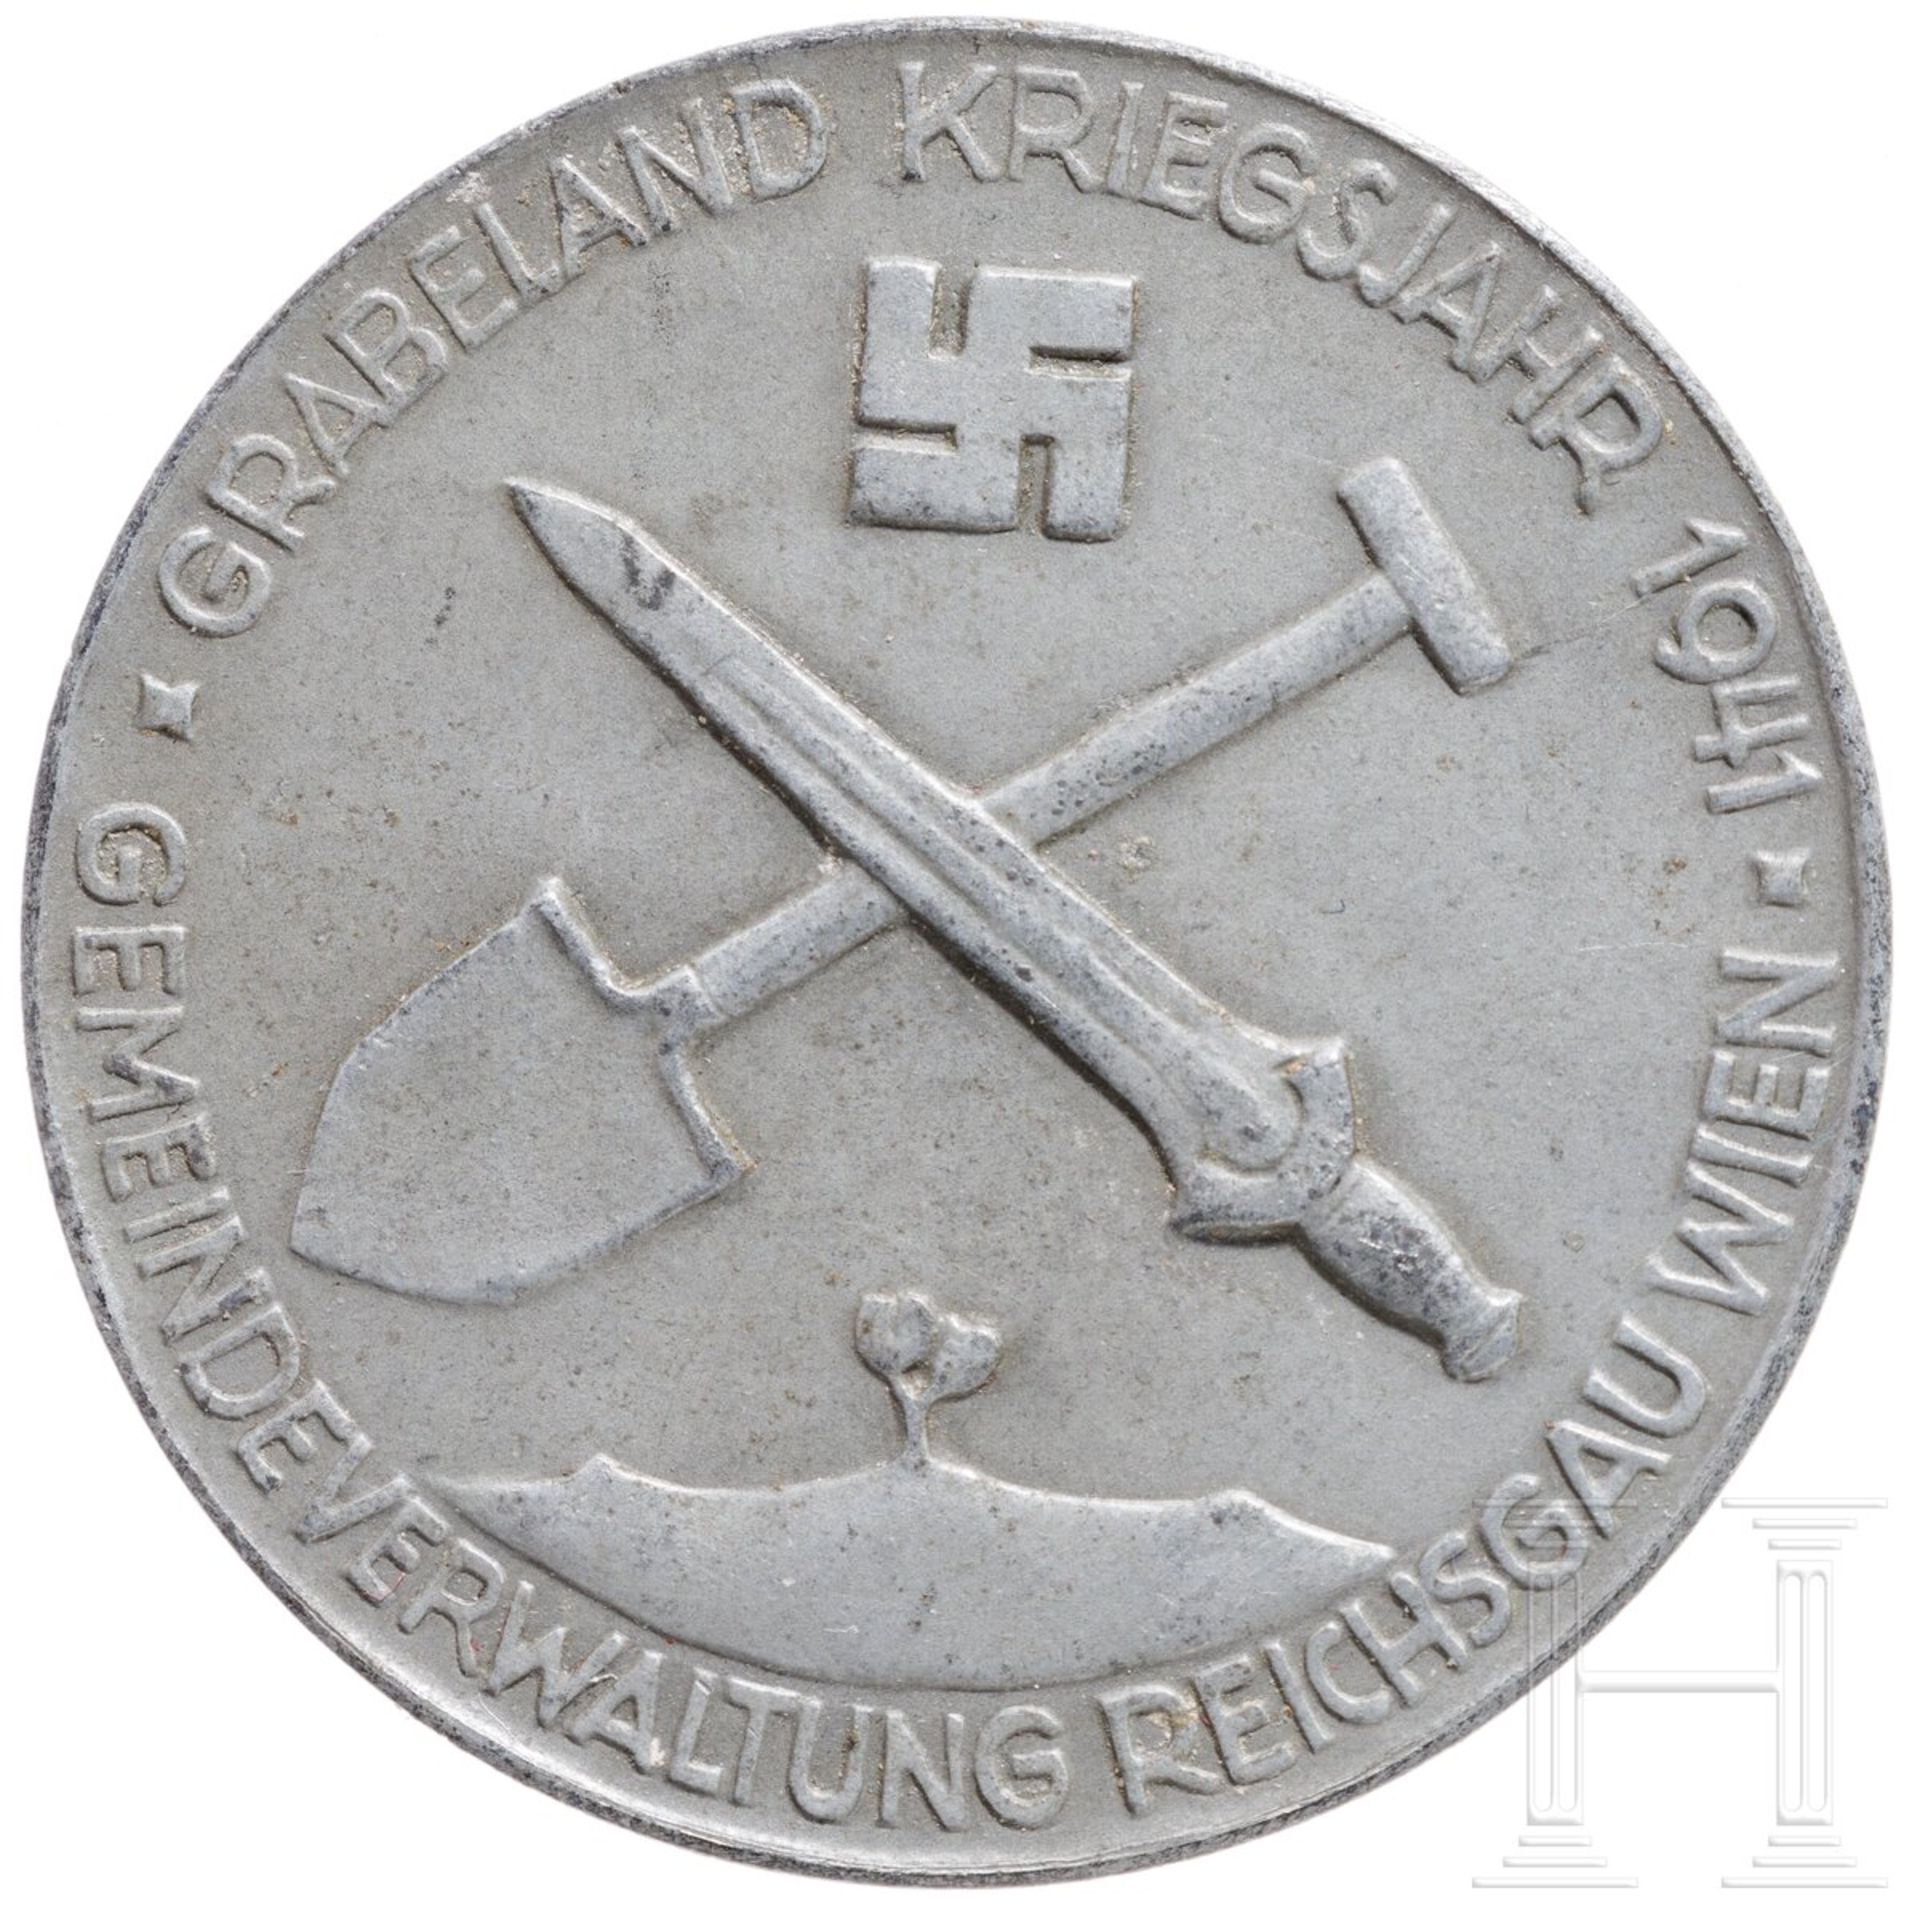 Medaille für Ackerbau der Stadt Wien 1941 - Image 2 of 3